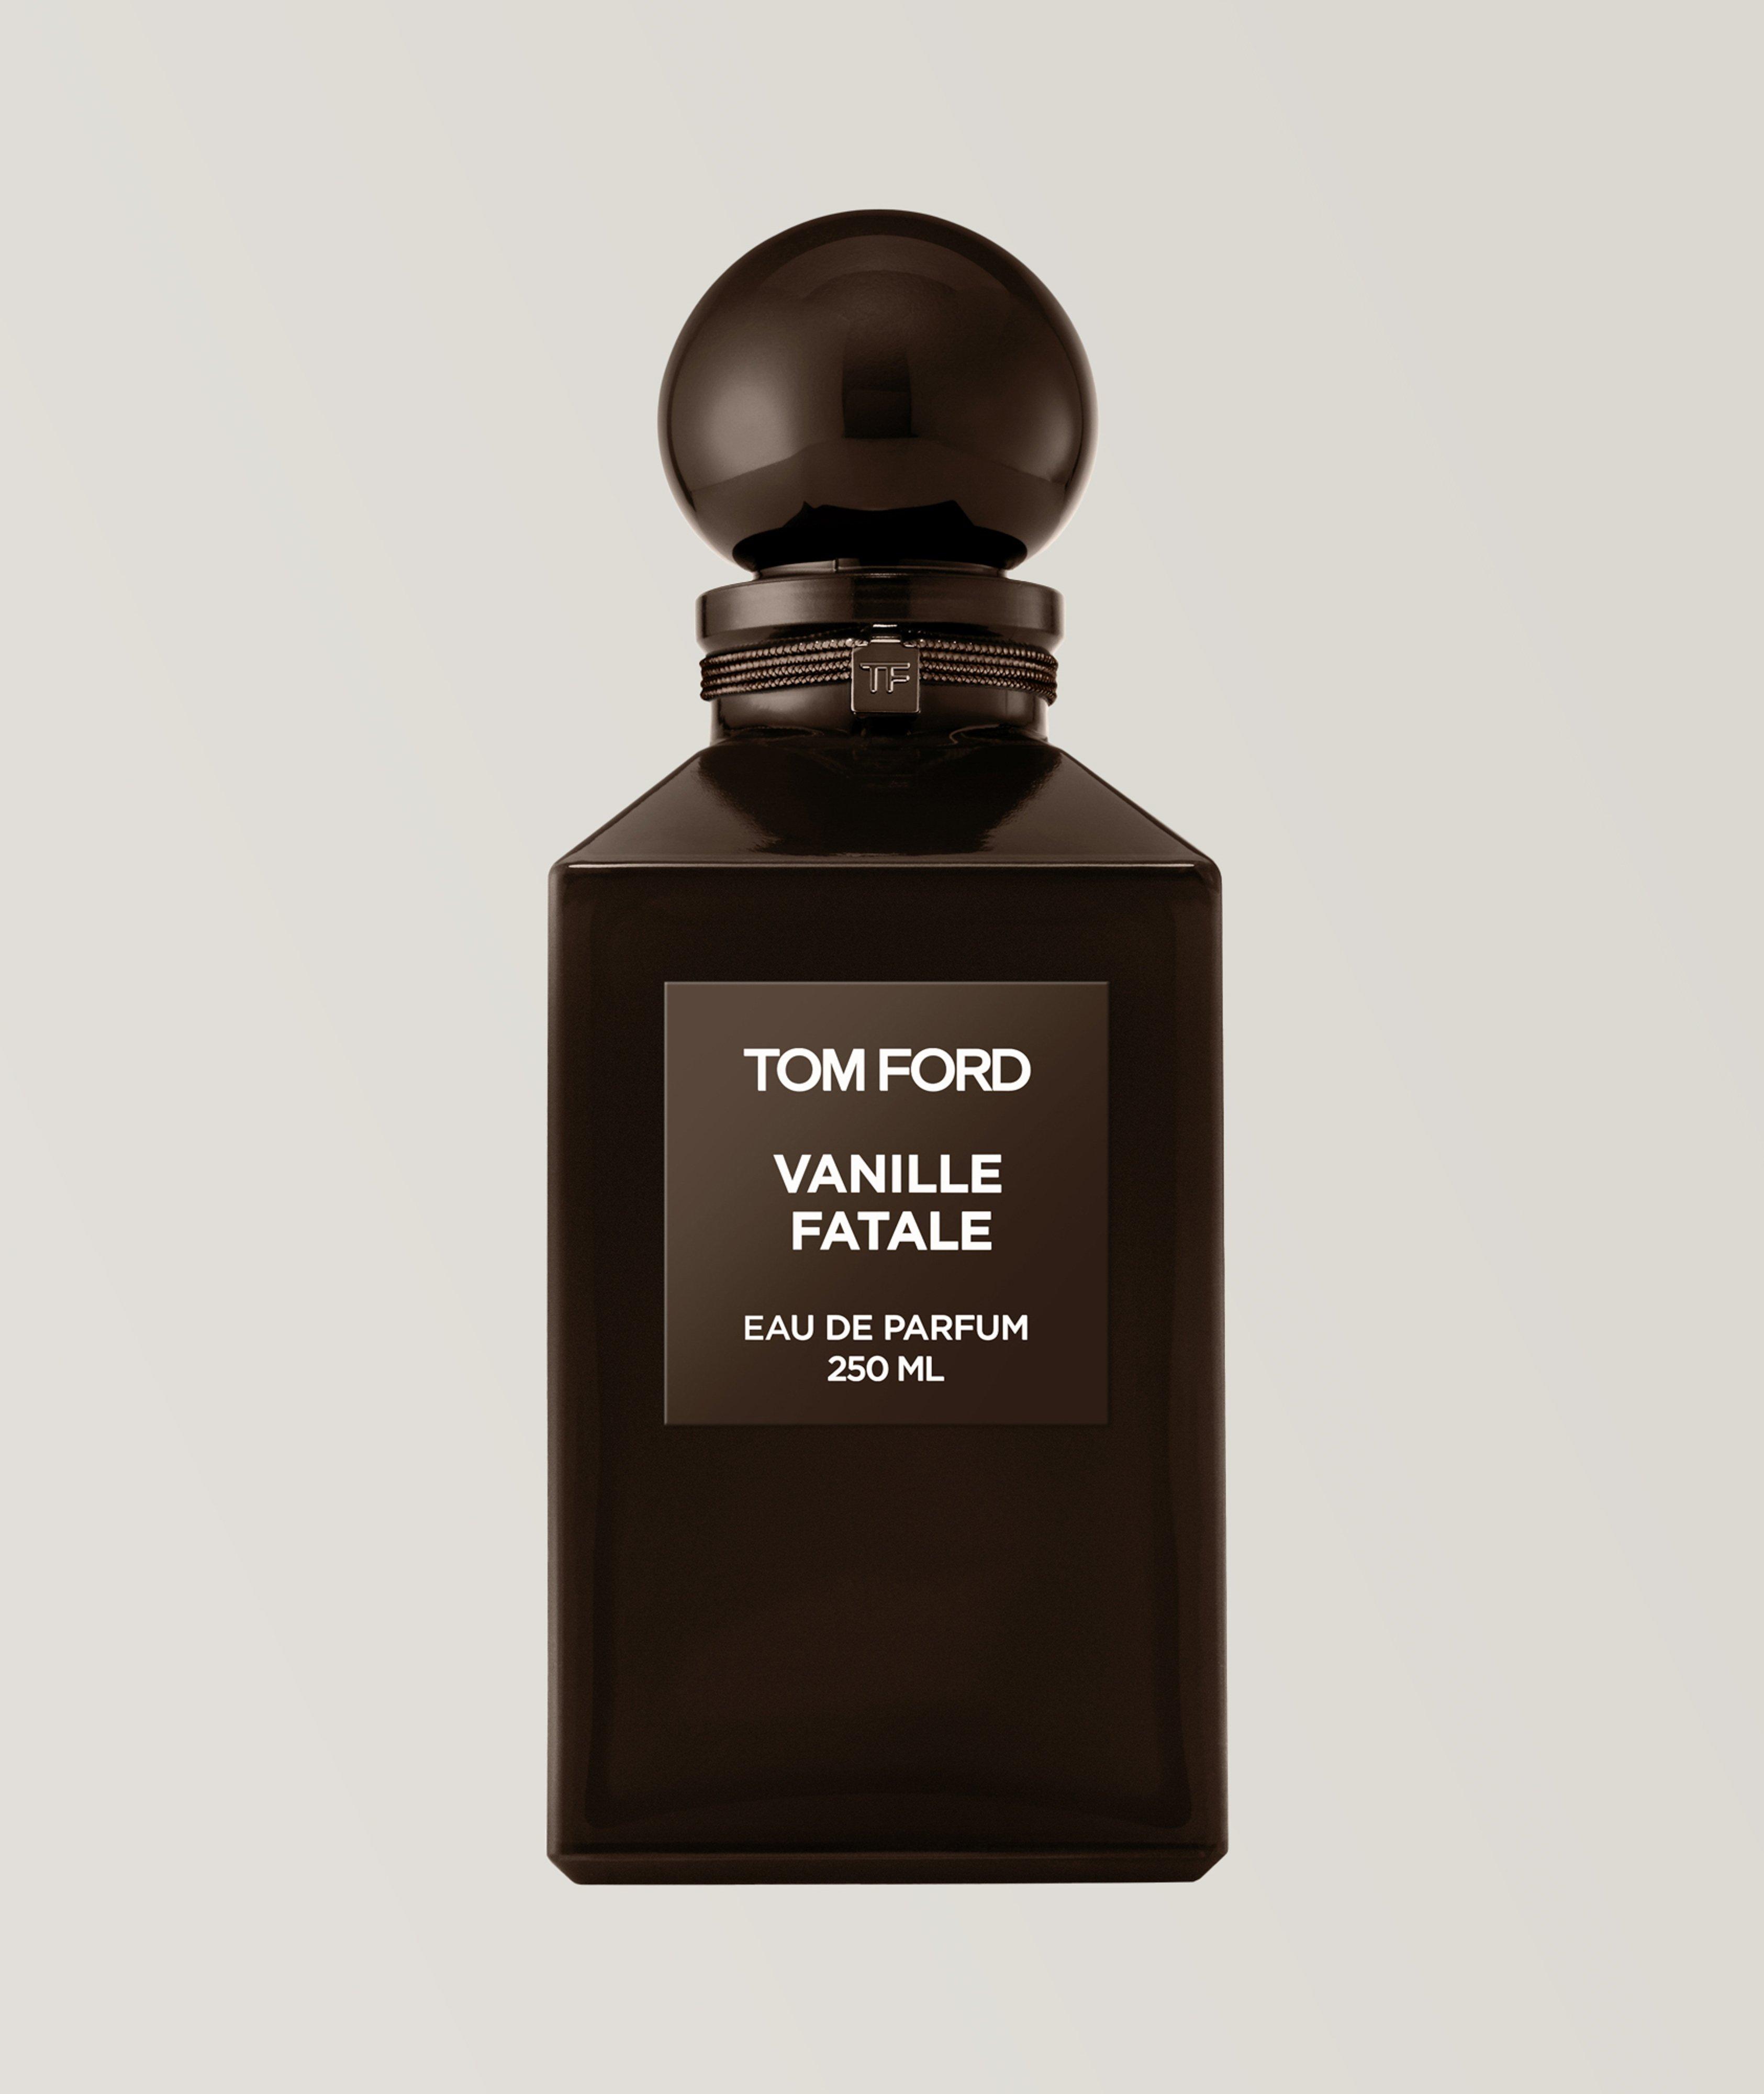 Eau de parfum Vanille fatale (250 ml) image 0